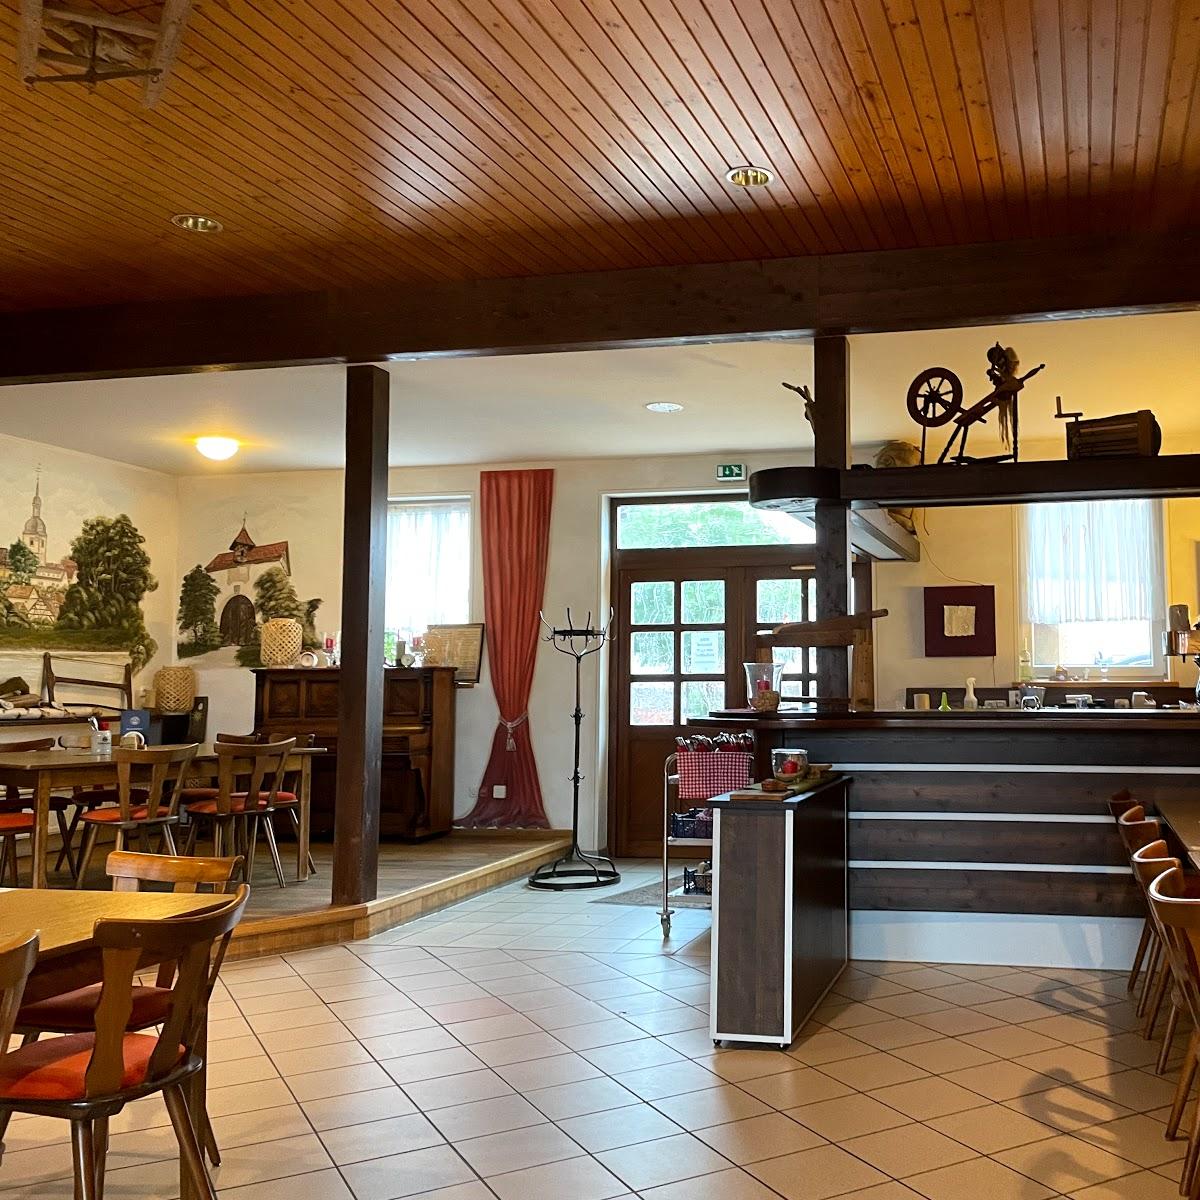 Restaurant "Landgasthof Zum Hirschen" in Sulzfeld